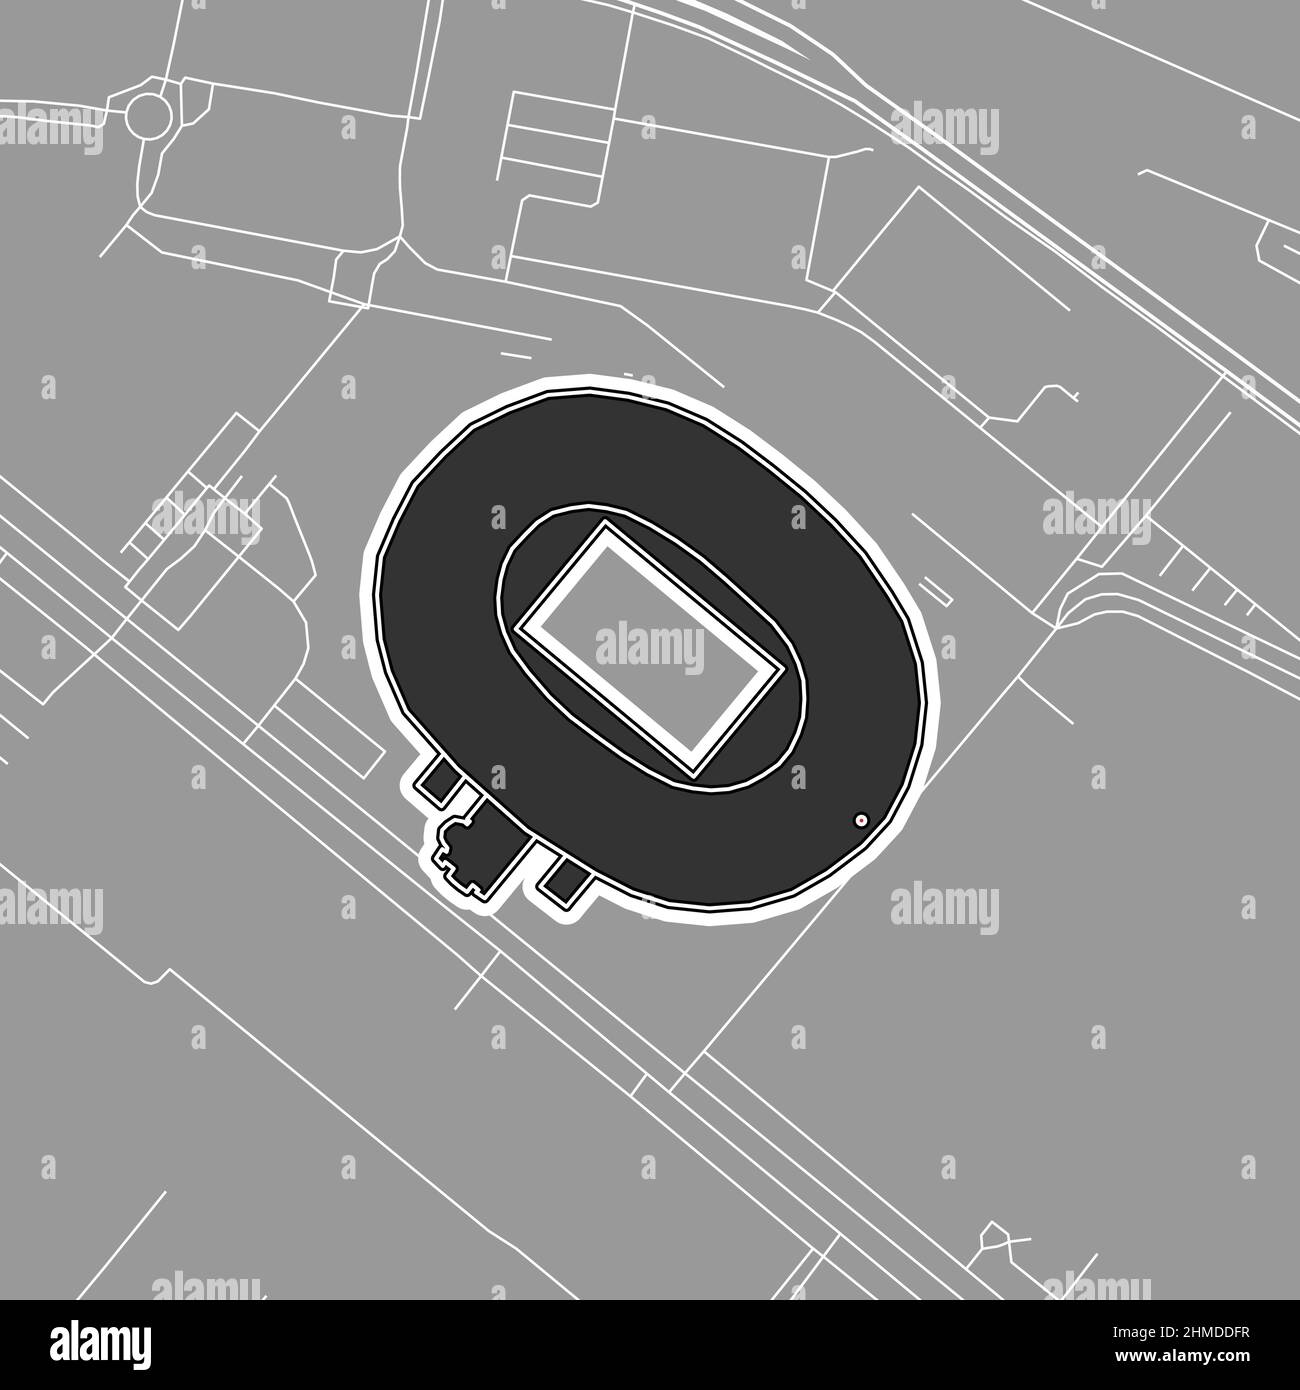 Stuttgart, estadio MLB de béisbol, mapa vectorial del contorno. El mapa del estadio de béisbol fue dibujado con áreas blancas y líneas para las carreteras principales y laterales. Ilustración del Vector